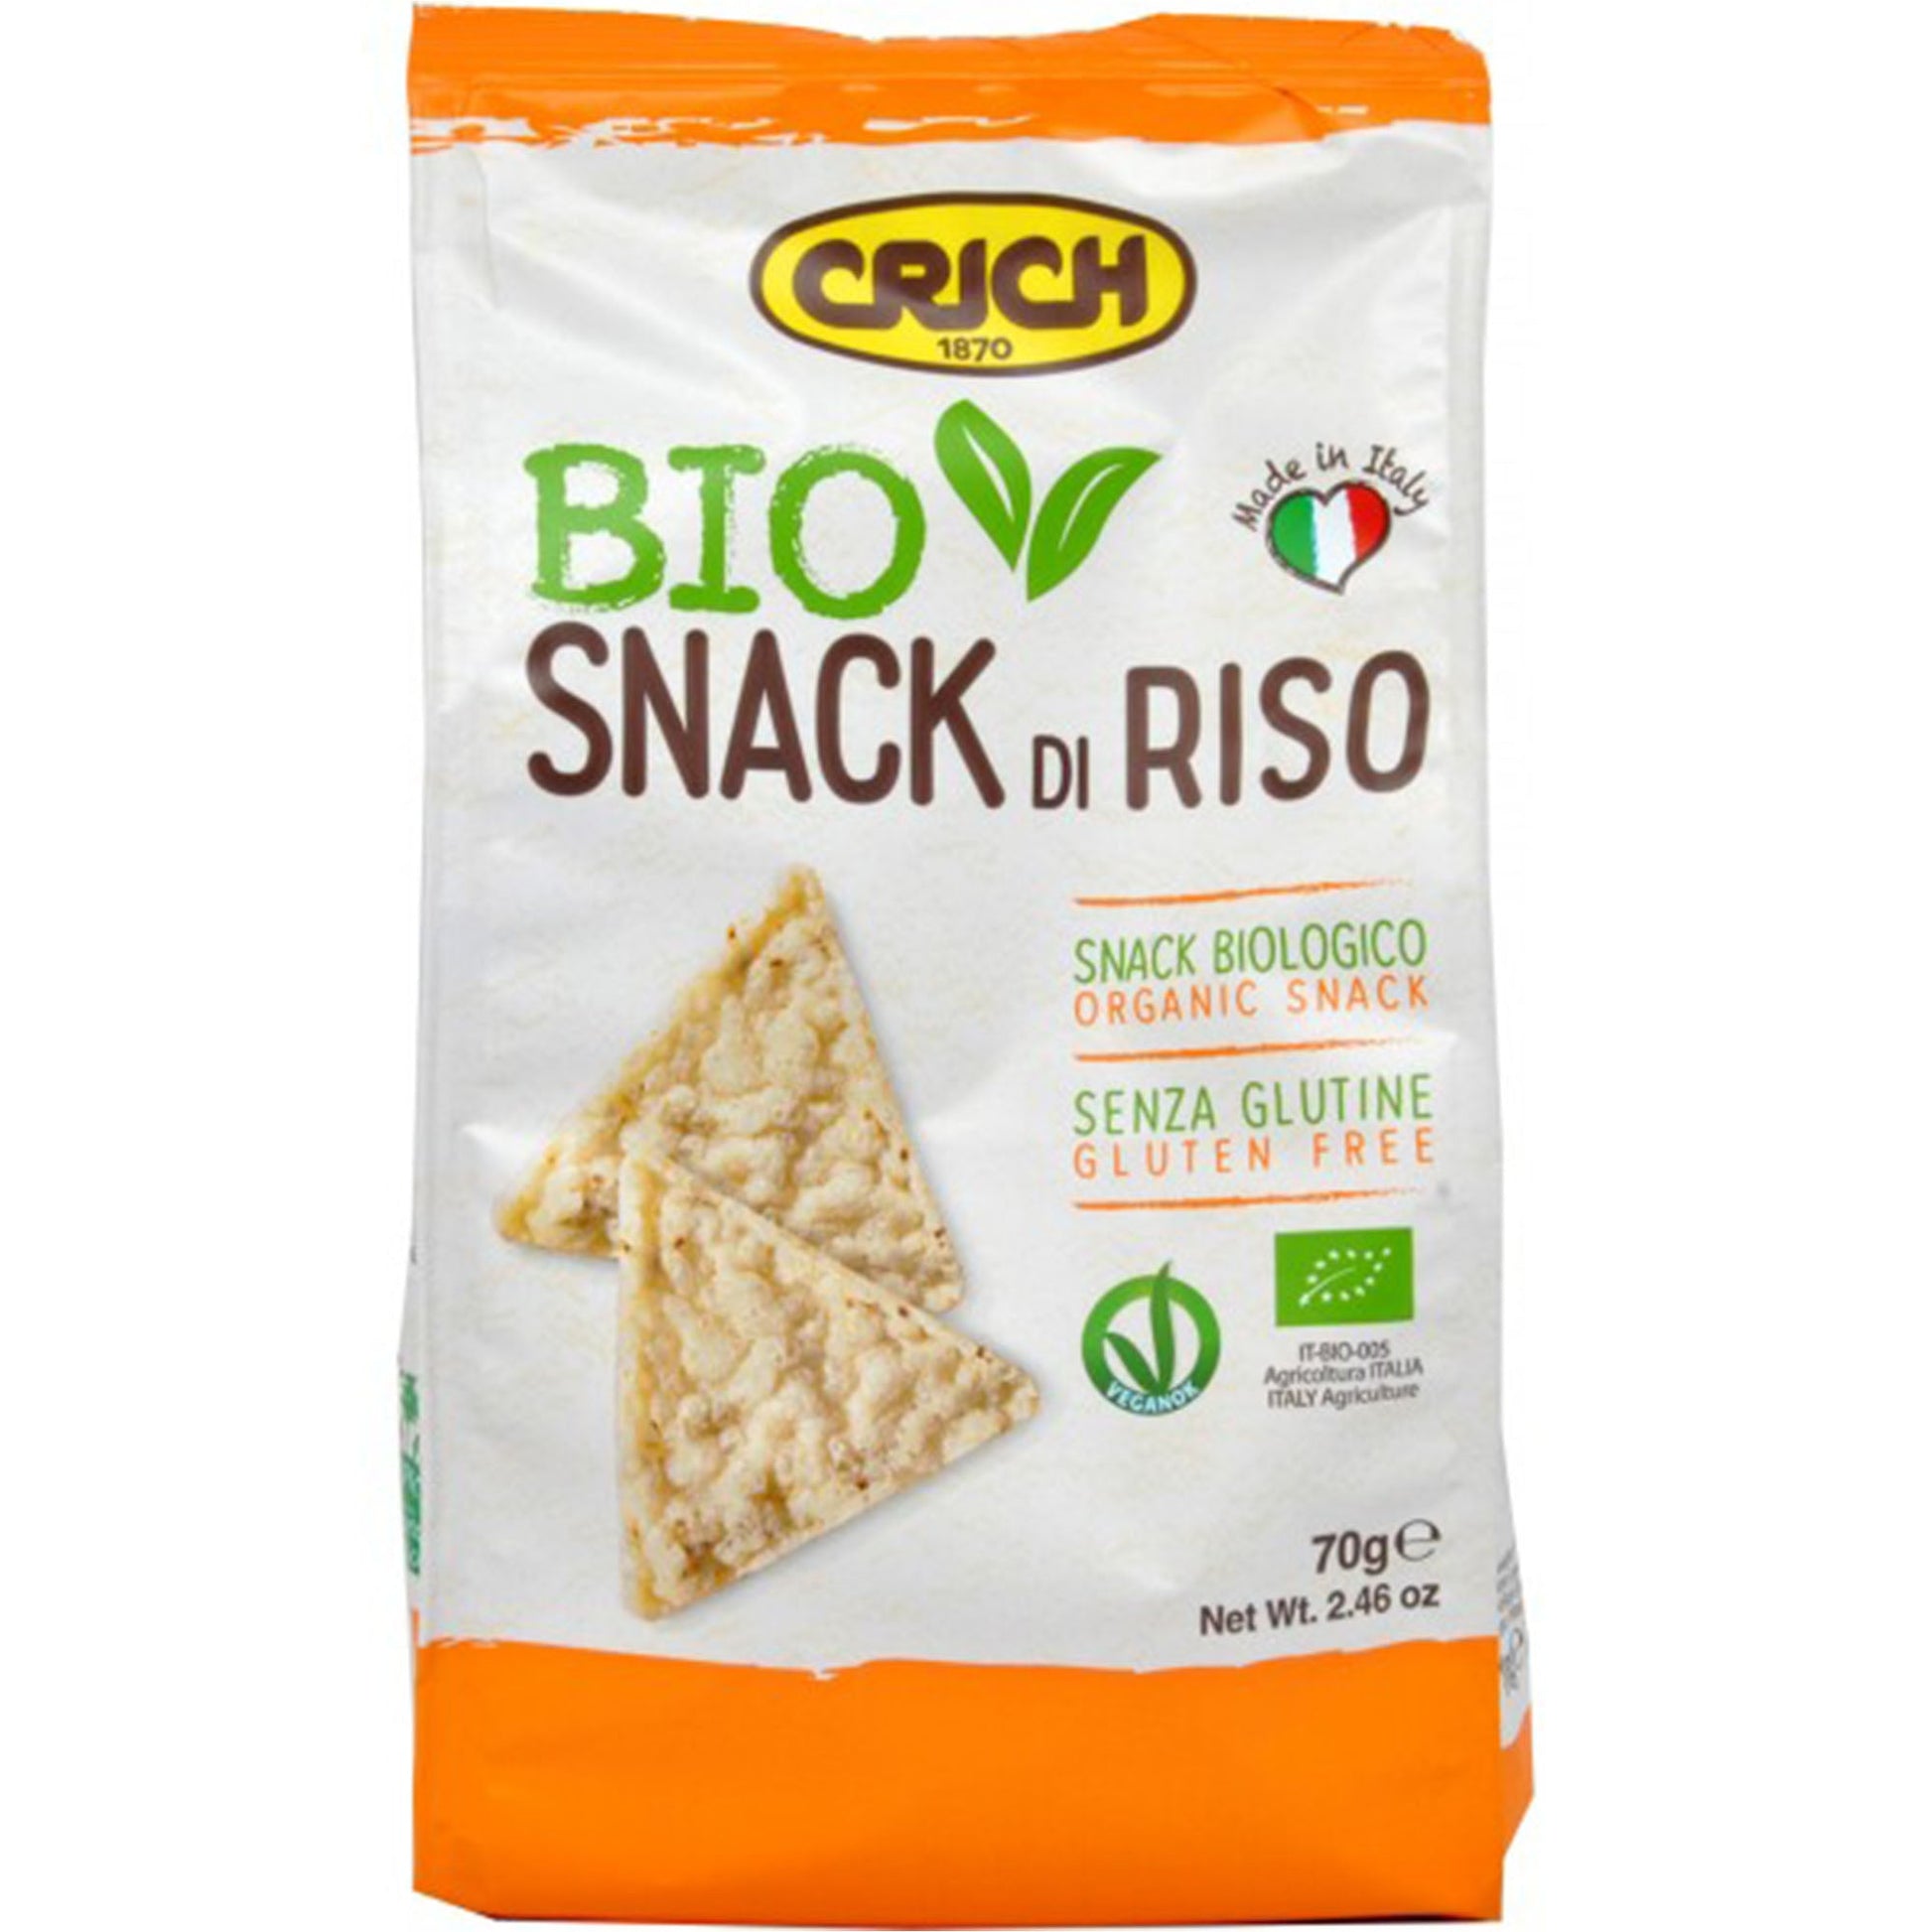 Crich Snack Riso Org Gf 70G